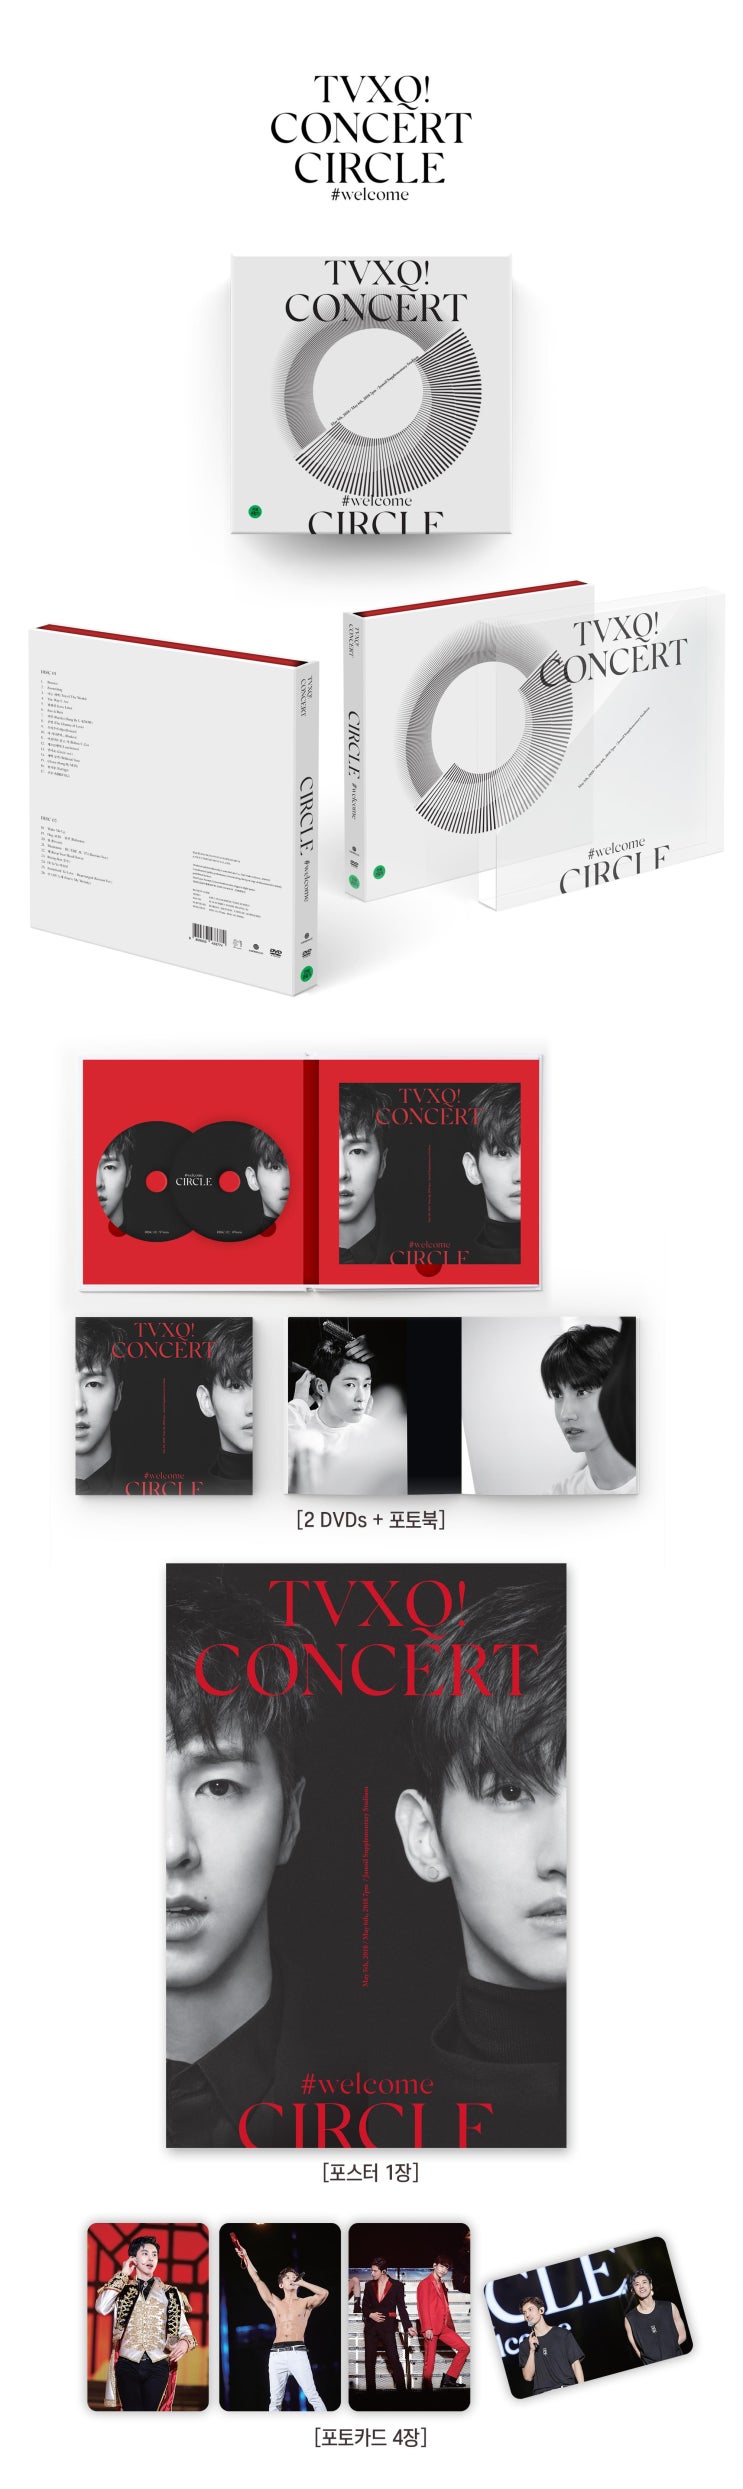 3월 27일 발매 동방신기  TVXQ! Concert -Circle- #welcome DVD 옵션 및 판매 사이트 링크